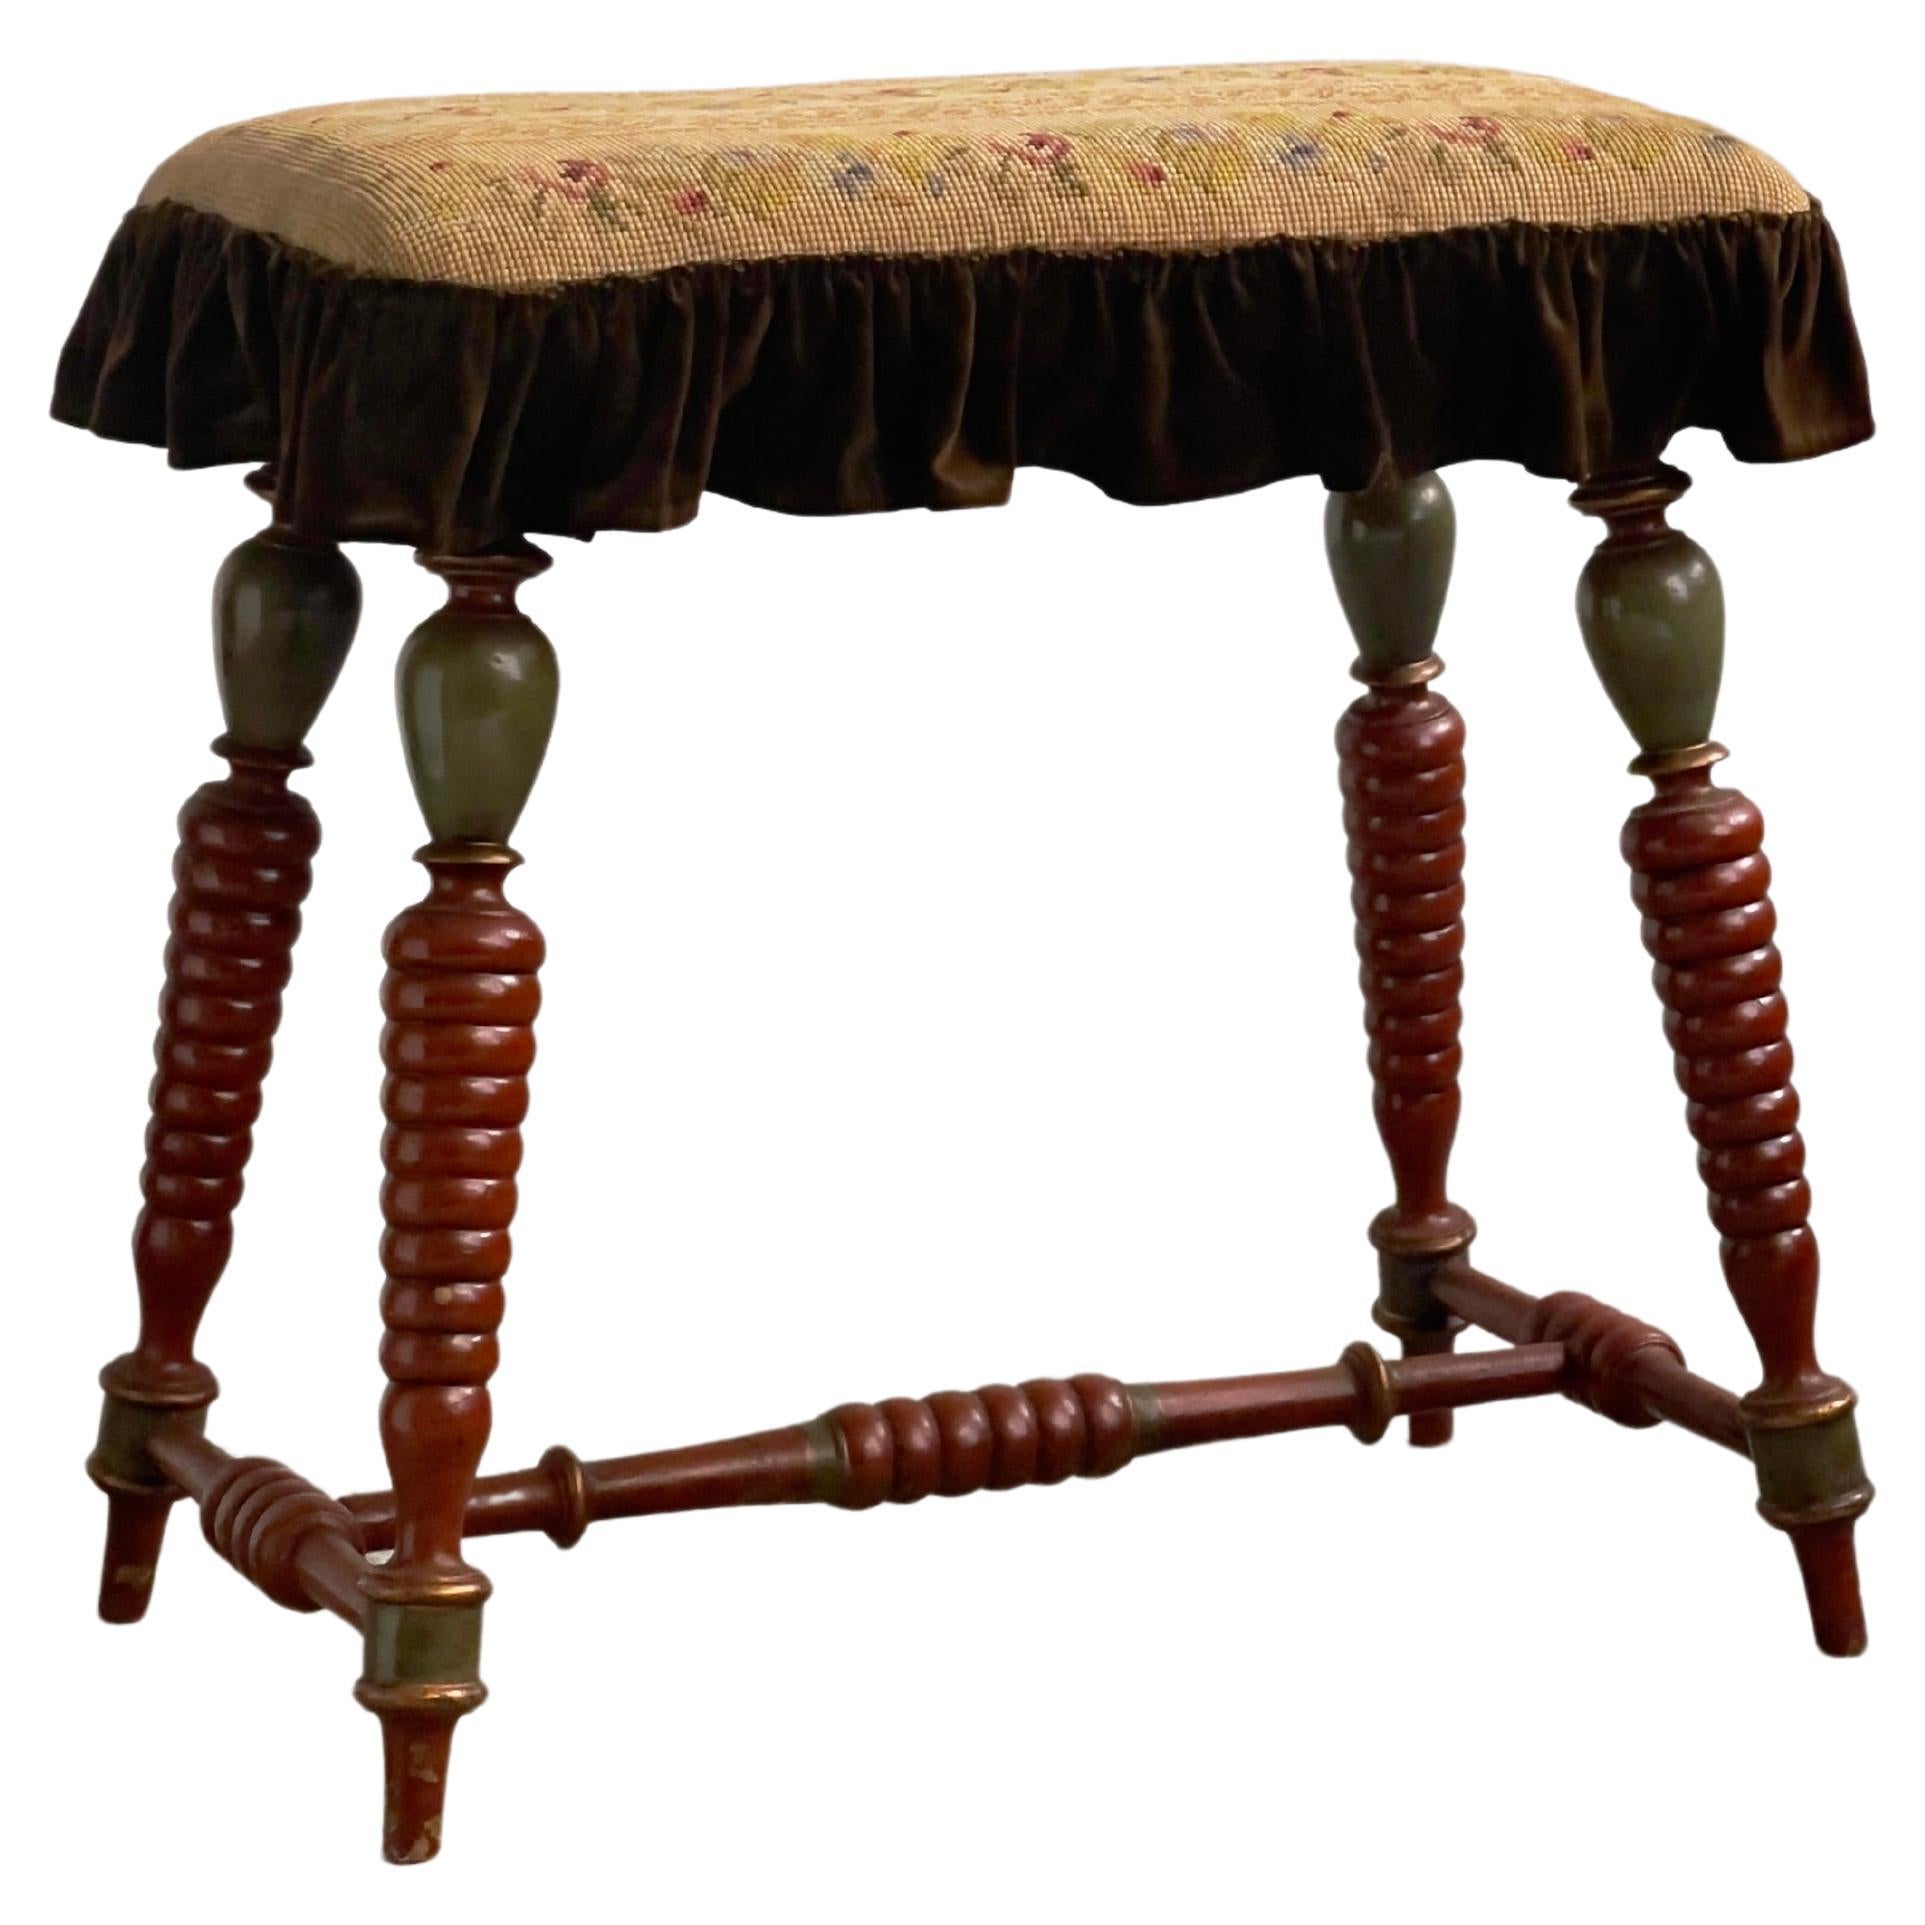 Dänischer Hocker aus dem späten 19. Jahrhundert mit geschnitzten, lackierten Beinen und besticktem Sitz.